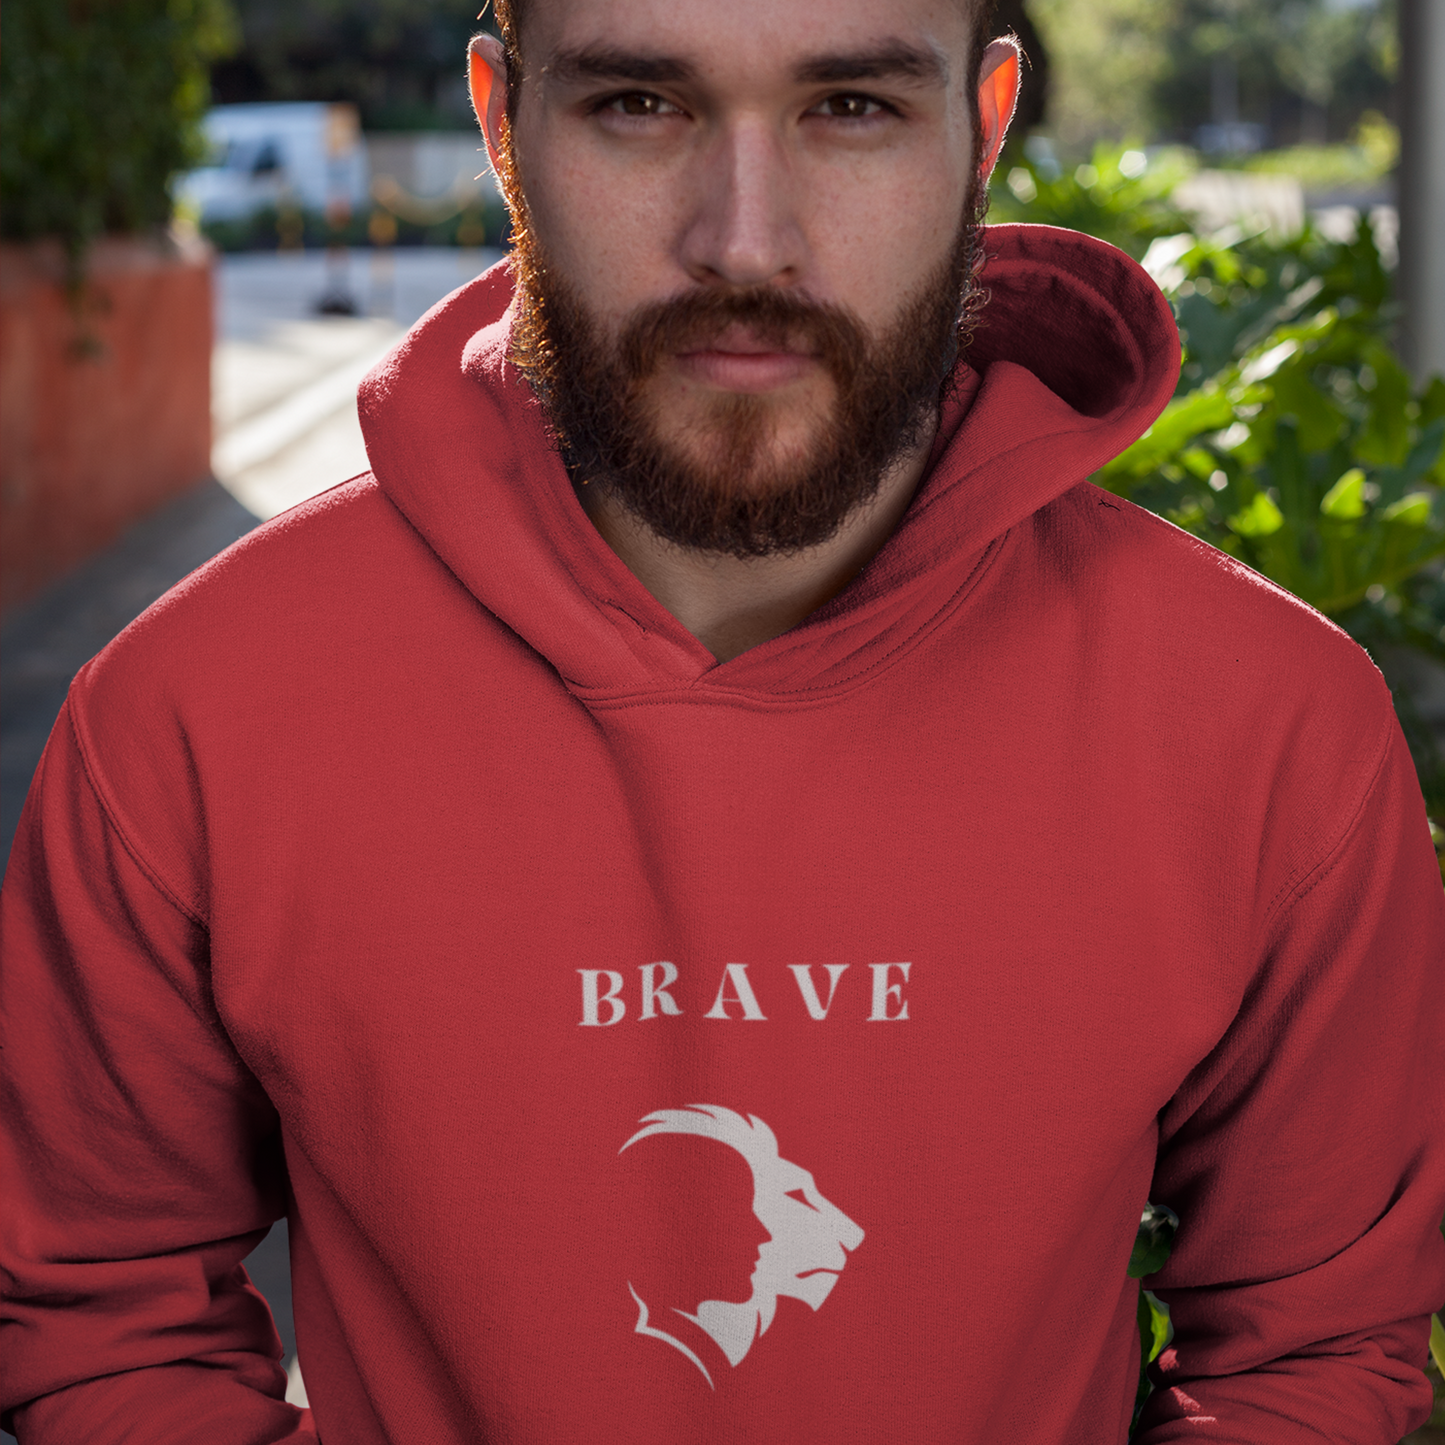 Brave  Hooded Sweatshirt gift, inspirational word hoodie gift, sweatshirt gift with encouraging words